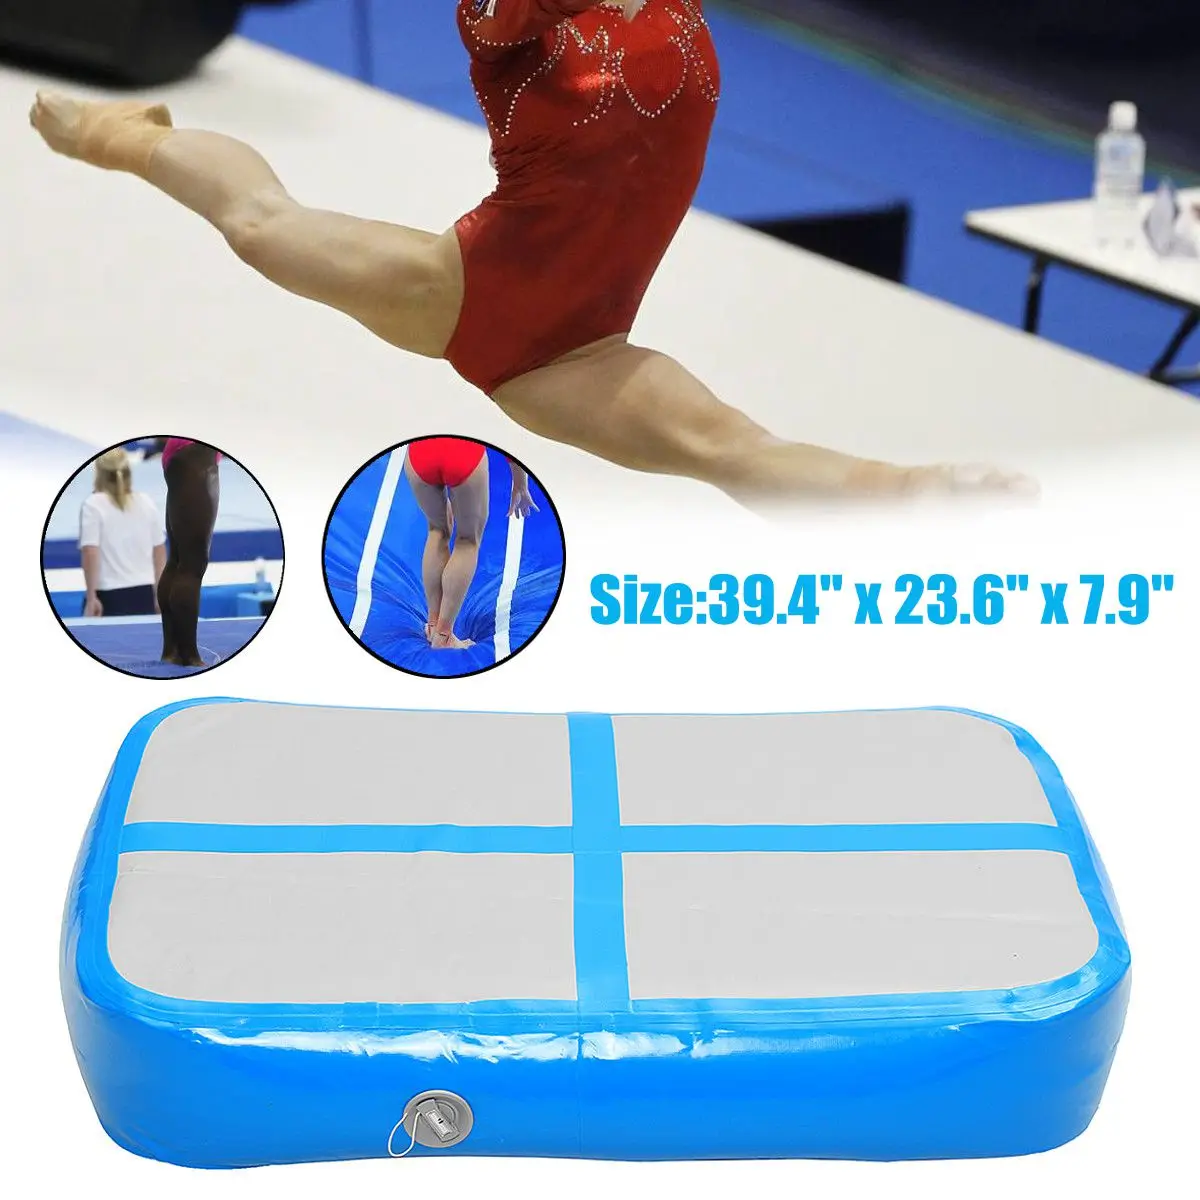 1 х 0,6 х 0,2 м надувной гимнастический коврик Airtrack Коврик Для Йоги пол гимнастический мат спортивное оборудование